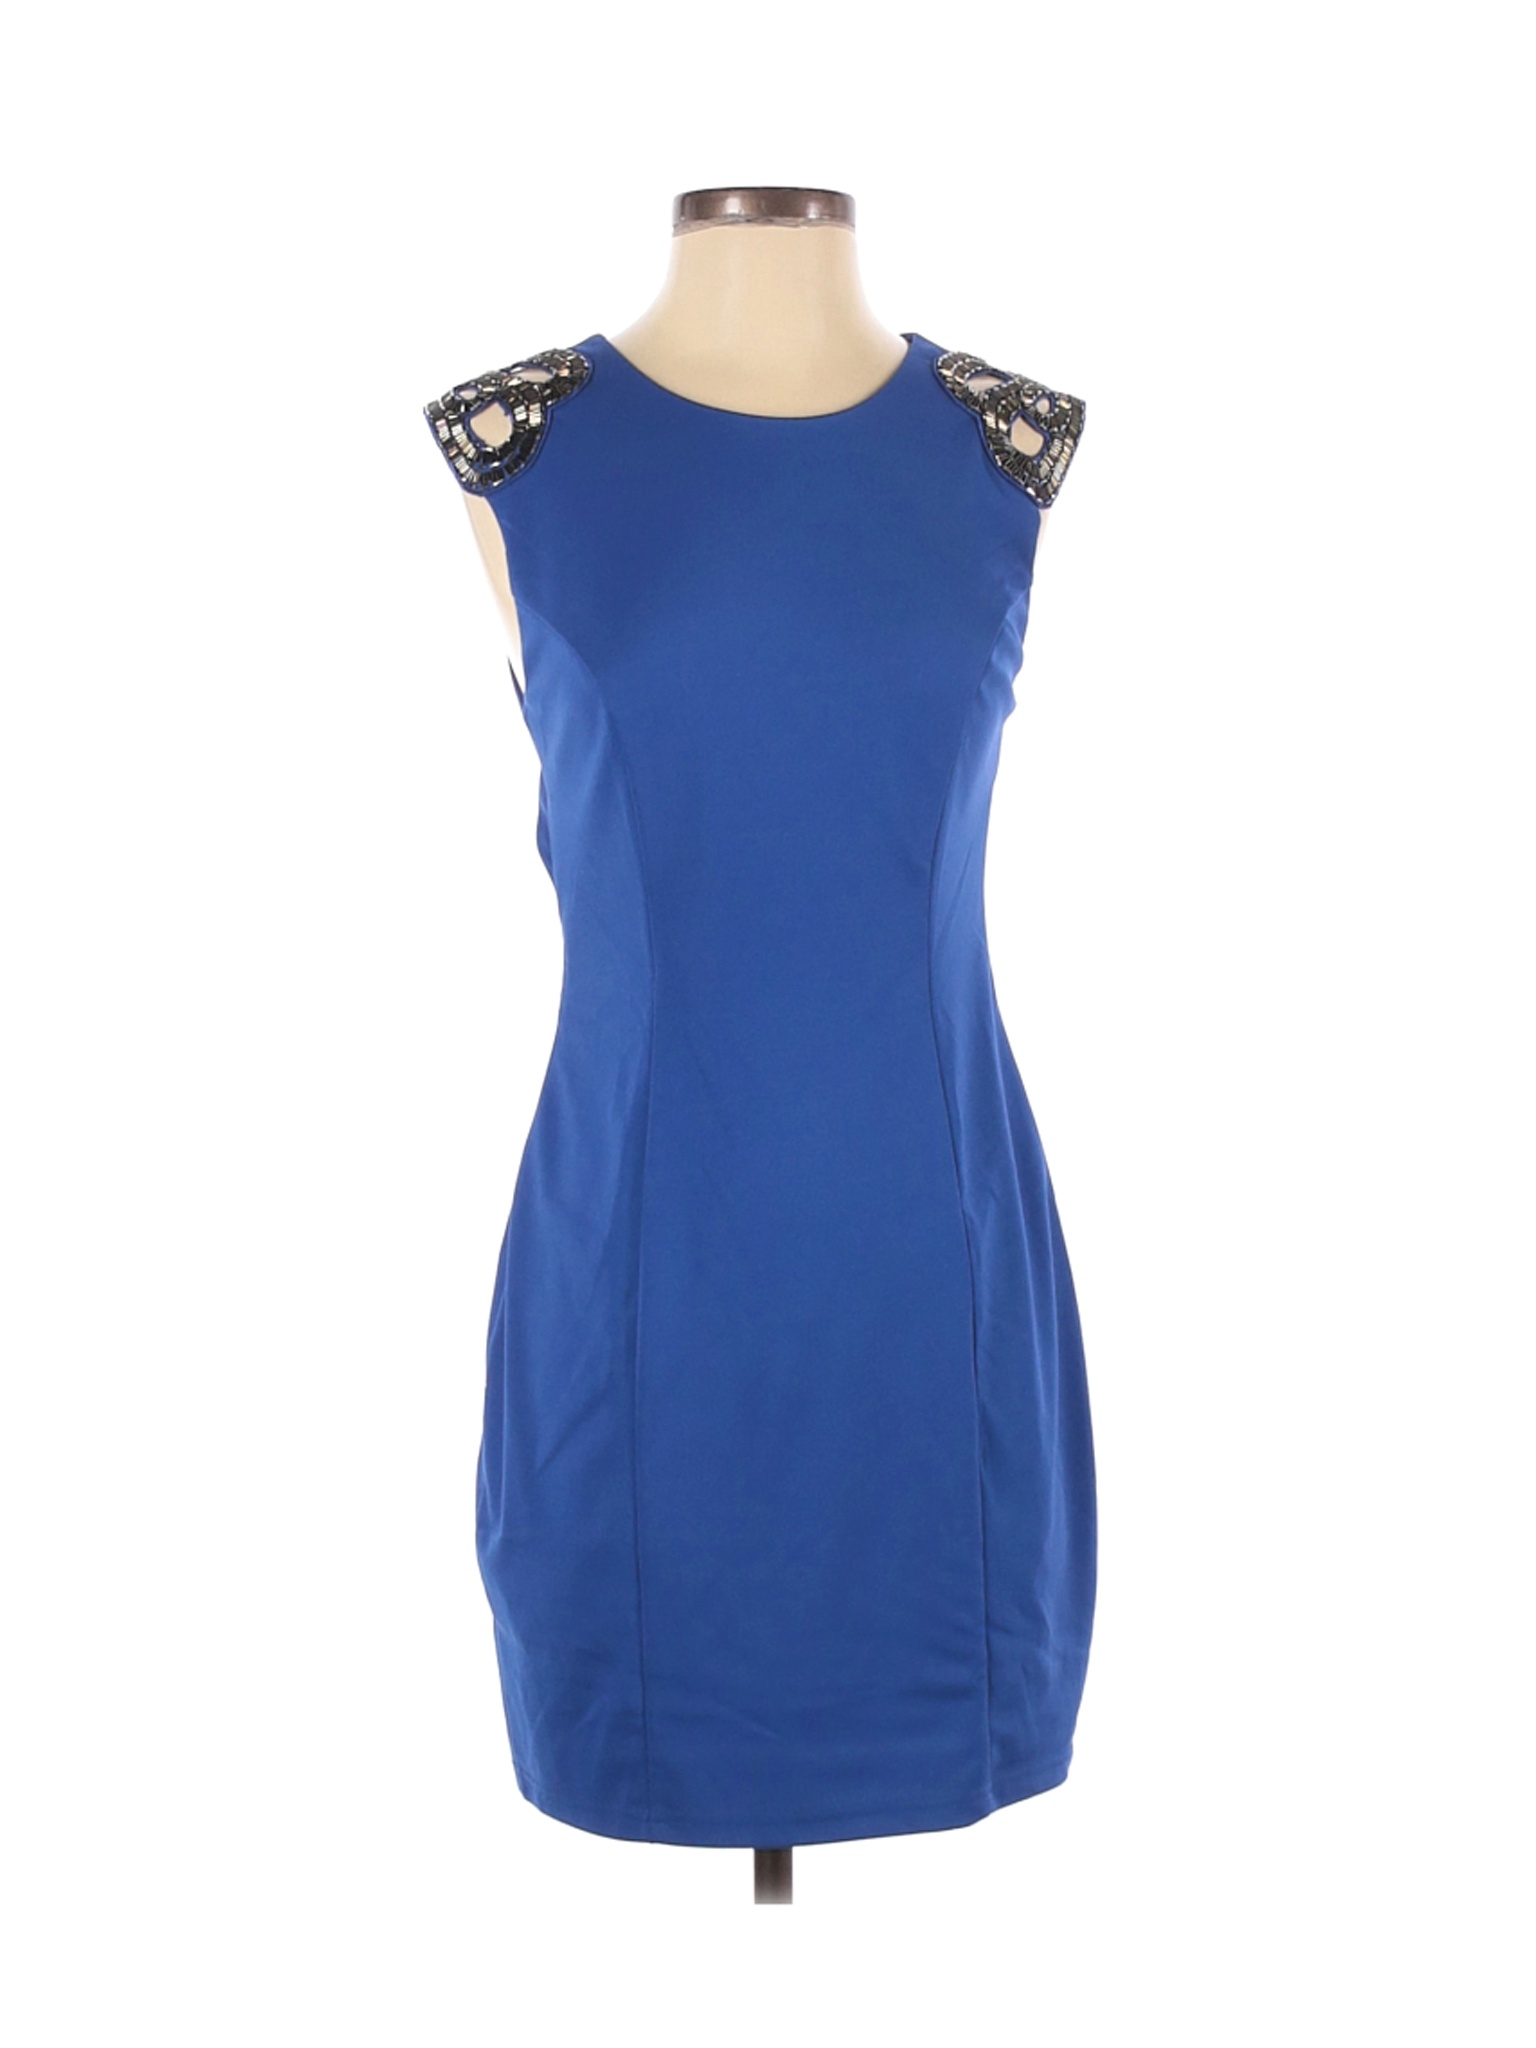 Arden B. Women Blue Casual Dress S | eBay